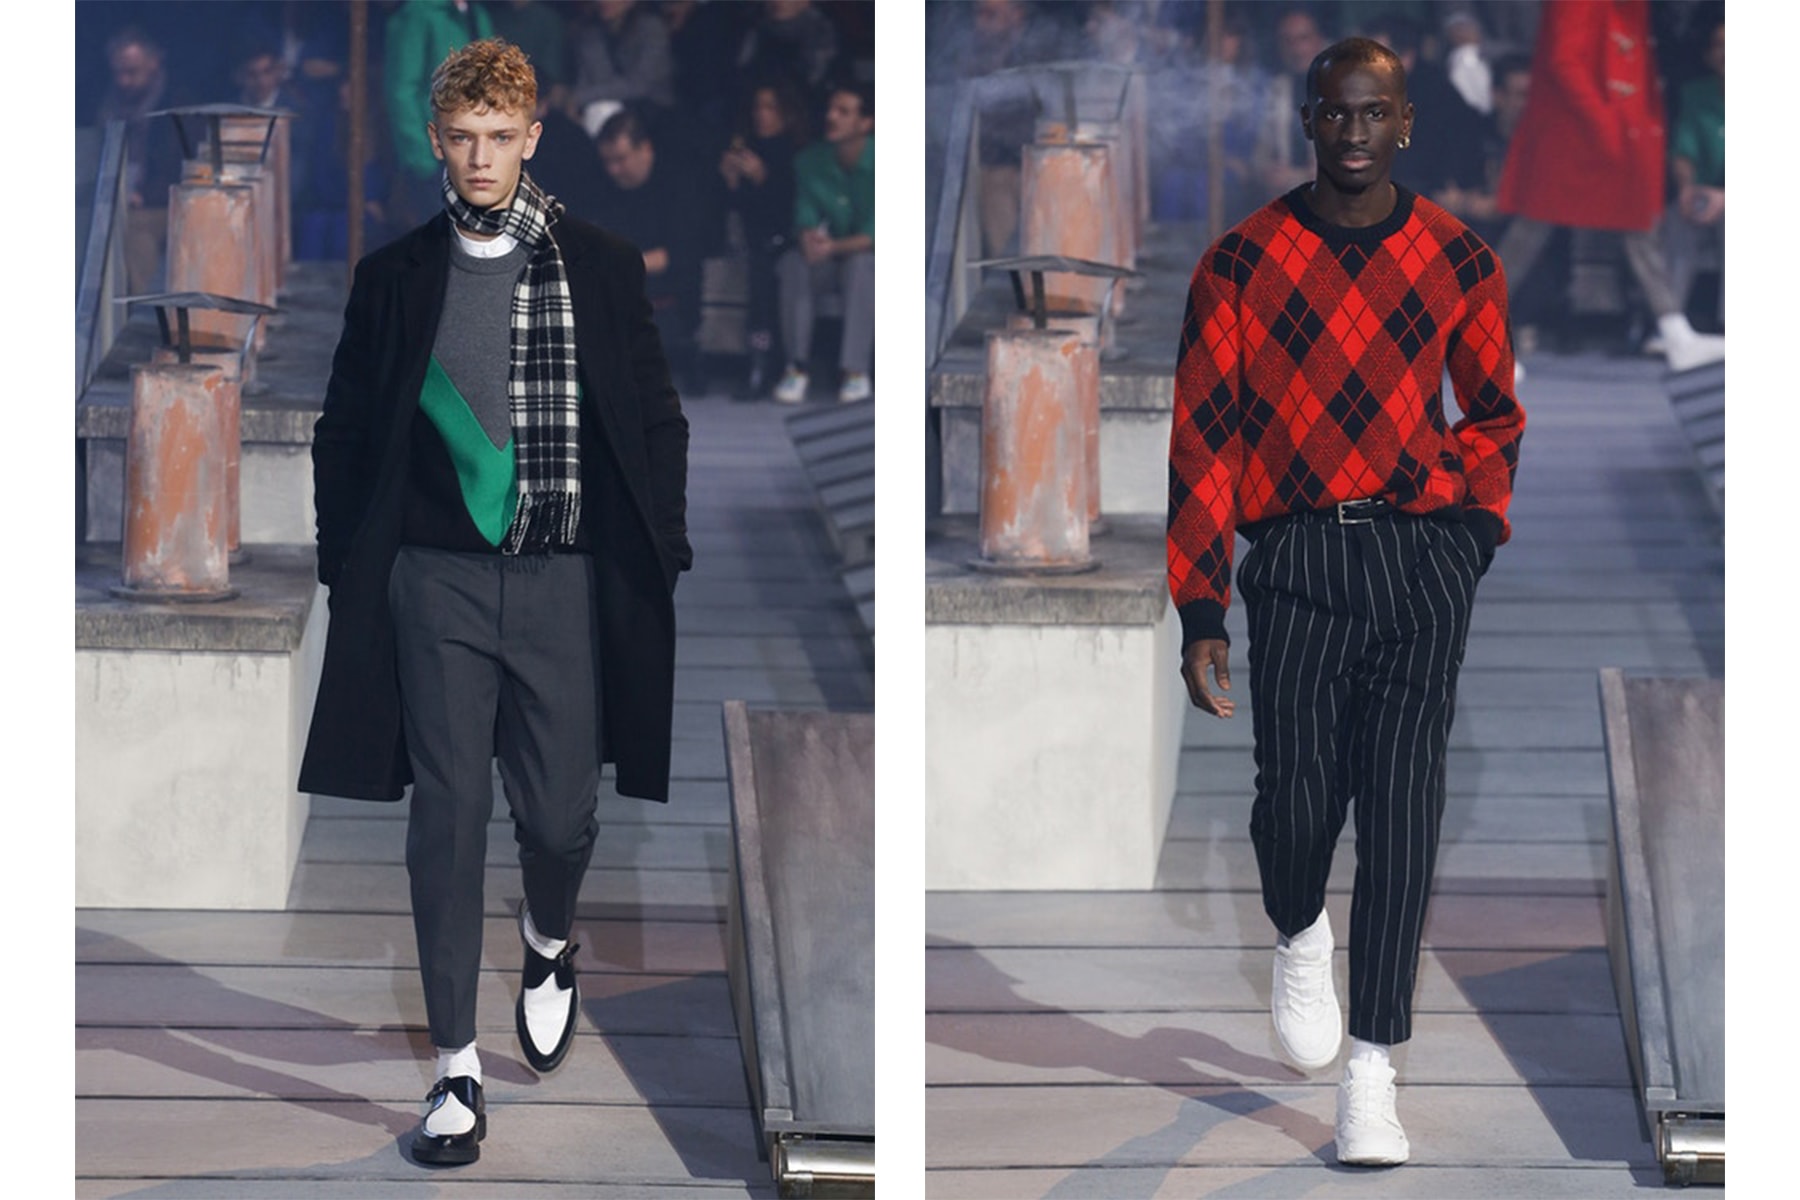 HYPEBEAST が選ぶ Paris Fashion Week: Men's 2018年秋冬ベストルック Day 3 キム・ジョーンズの〈Louis Vuitton〉最後のランウェイに業界人が涙した3日目もパリらしい錚々たるブランドが集結  2018年秋冬のパリファッション・ウィーク3日目は、前日にKim Jones（キム・ジョーンズ）の〈Louis Vuitton（ルイ・ヴィトン）〉退任報道があり、その驚きが収まることなく迎えた1日だった。ロンドン生まれの天才は〈Supreme（シュプリーム）〉との衝撃のコラボレーションなど、ストリートとラグジュアリーの架け橋となり、その垣根を取り除いてくれた立役者であることに疑いようの余地はない。あくまで筆者の推測の域ではあるが、世界屈指のメゾンとして確固たる地位を築いてきたブランドだけに、KJの挑戦という旅路では公にならない“何か”があったのではないだろうか。  集大成となるコレクションではピースサインのグラフィックでLVロゴを表現したニットやフットボールシャツなどを披露し、〈Louis Vuitton〉への感謝と愛を公言。また、フィナーレにKate Moss（ケイト・モス）とNaomi Campbell（ナオミ・キャンベル）を両手にして登場したJonesの姿は、後世にも語り継がれる一瞬になるはずだ。  一方で、Day 3は〈Yohji Yamamoto（ヨウジ ヤマモト）〉、〈Dries Van Noten（ドリス ヴァン ノッテン）〉、〈Rick Owens（リック オウエンス）〉といったファッション界屈指のメゾンが登場した1日でもある。上のフォトギャラリーでは、その数あるブランドのベストルックを厳選しているので、是非チェックしてみてほしい。  あわせて、数あるランウェイをハイライト形式でまとめた各都市の日別ベストルックは、以下からご確認を。  2018年秋冬ファッションウィーク 各都市日別ベストルック ロンドン：Day 1 / Day 2 / Day 3 ミラノ：Day 2 / Day 3 / Day 4